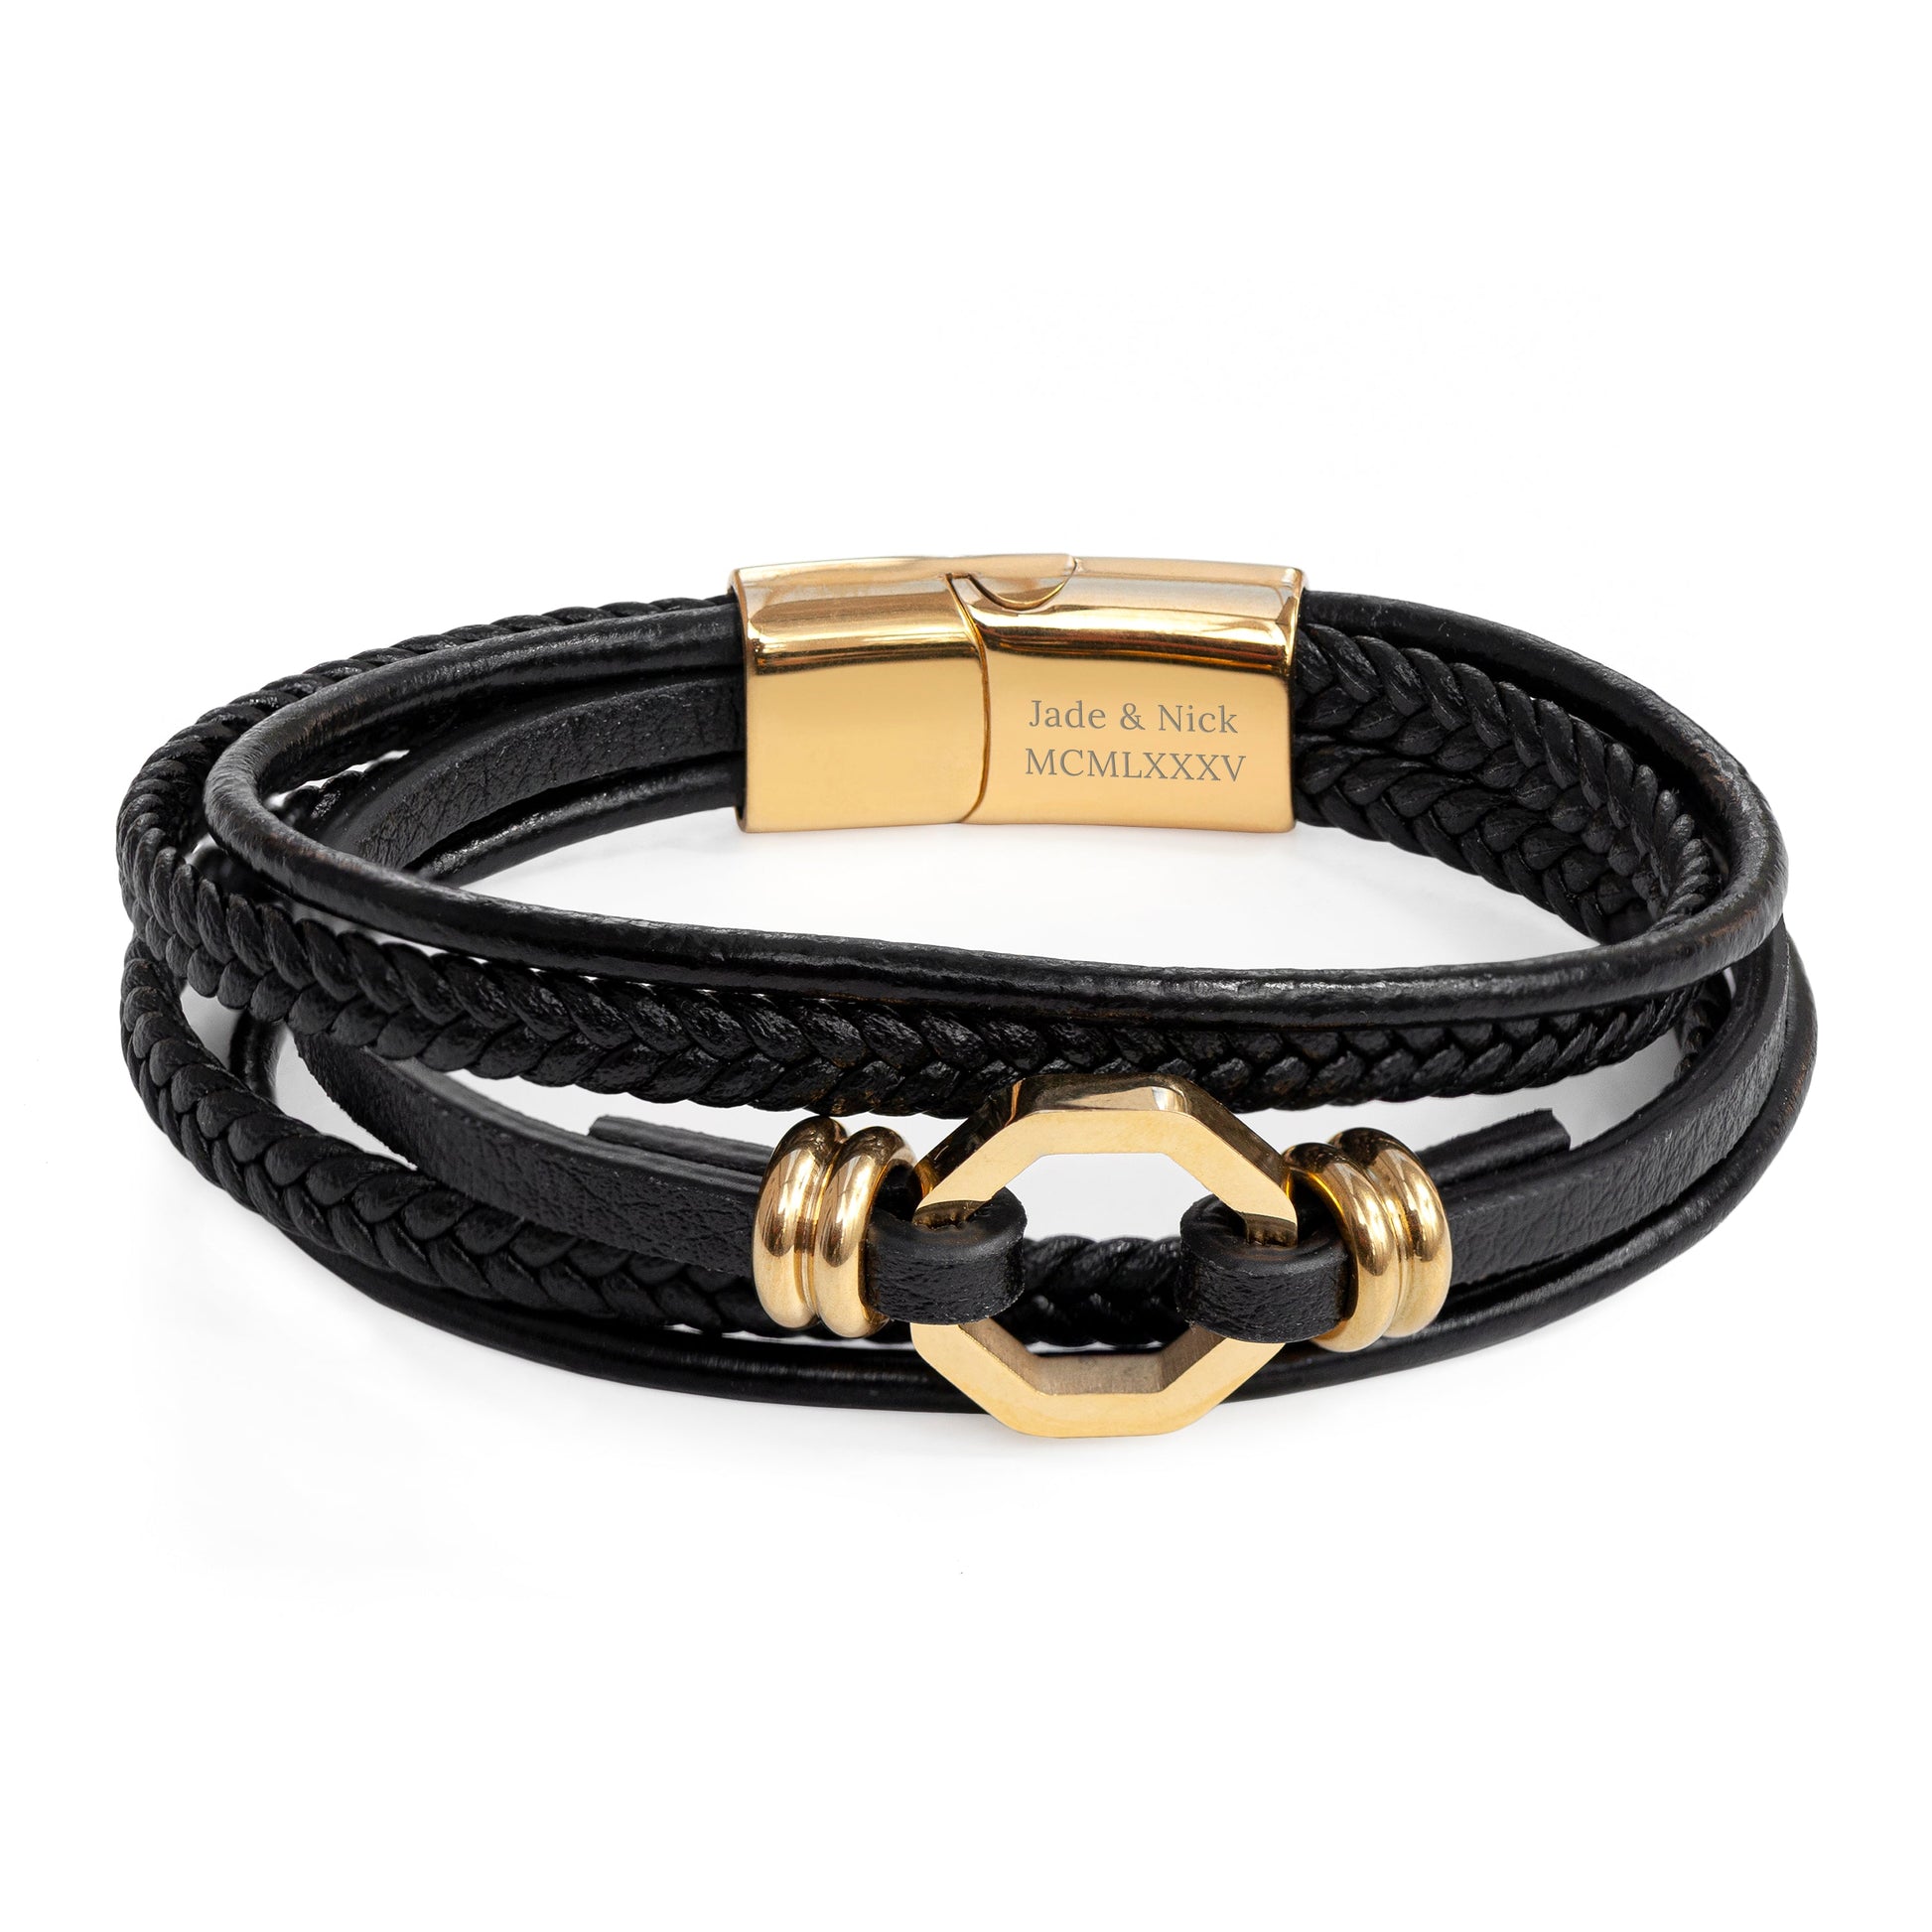 Personalized Men's Bracelets - Personalized Men's Mayfair Leather Bracelet in Gold 